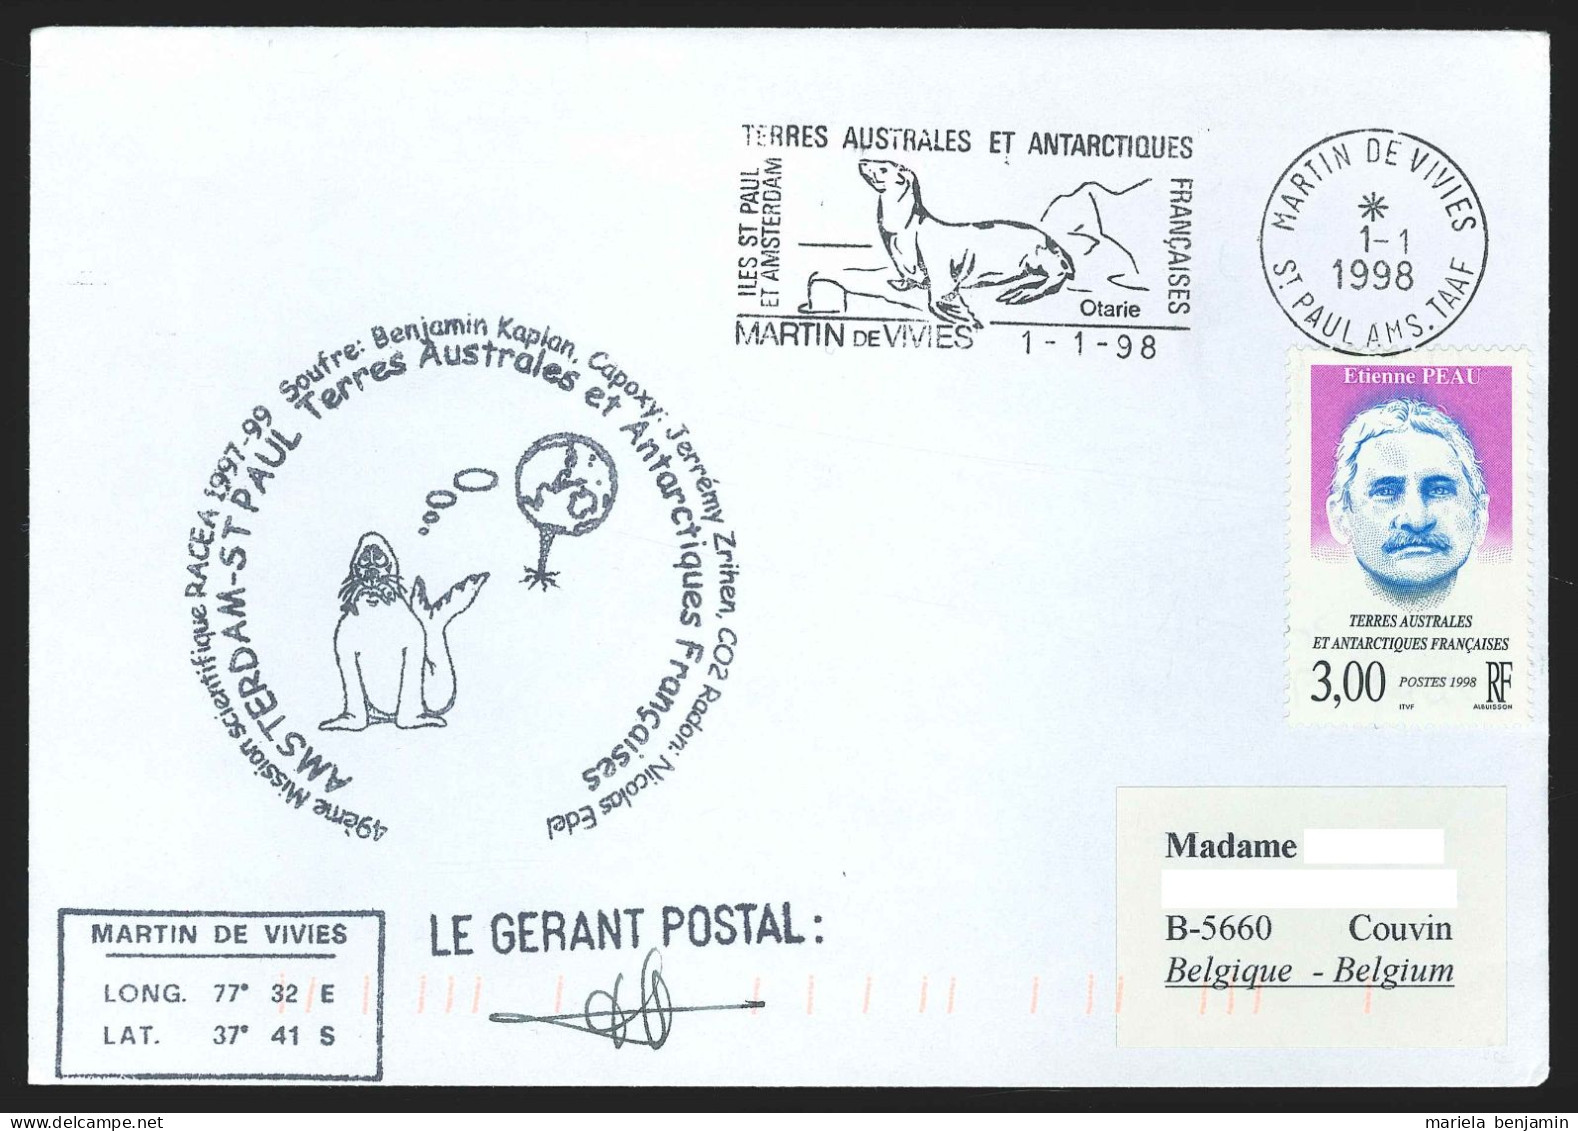 TAAF - St-Paul & Amsterdam - RACEA 49e Mission Affr. Etienne Peau Oblit. 1e Jour Martin-de-Viviès 1-1-1998 - Lettres & Documents